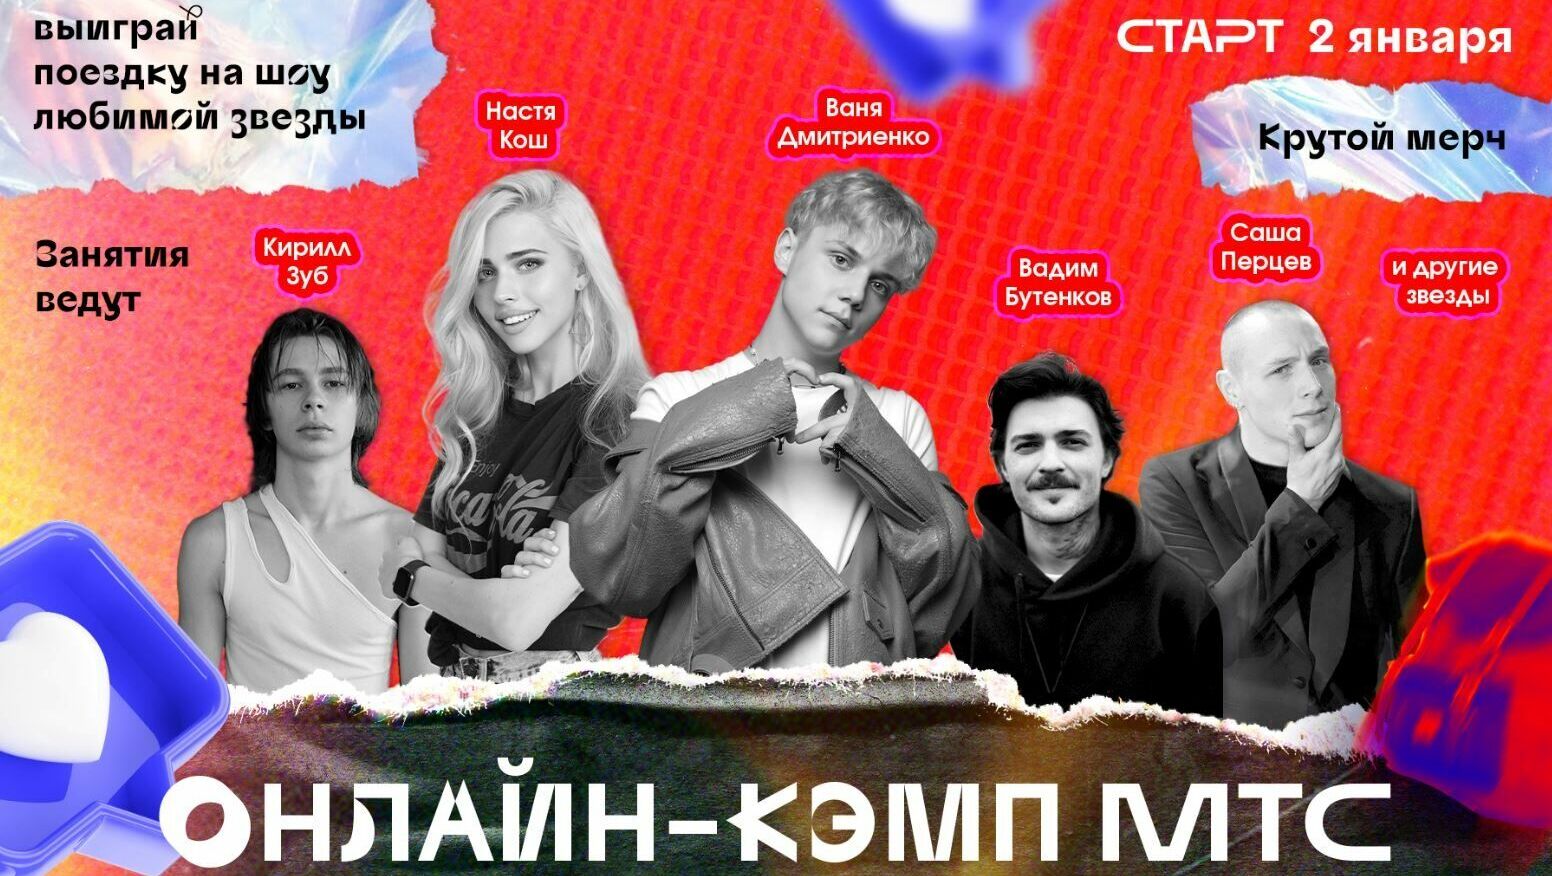 Тюменские школьники проведут каникулы на онлайн-кэмпе с певцом Ваней Дмитриенко